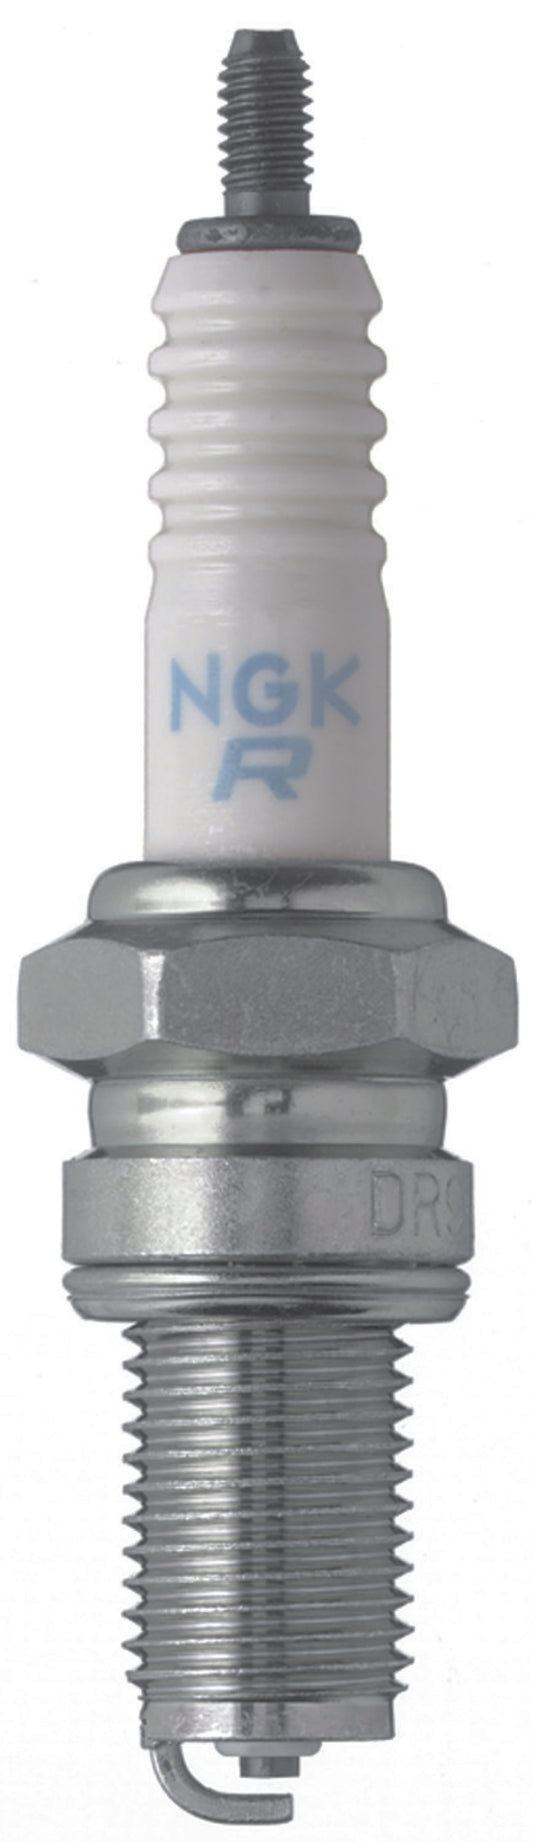 NGK Standard Spark Plug Box of 10 (DR7EA)